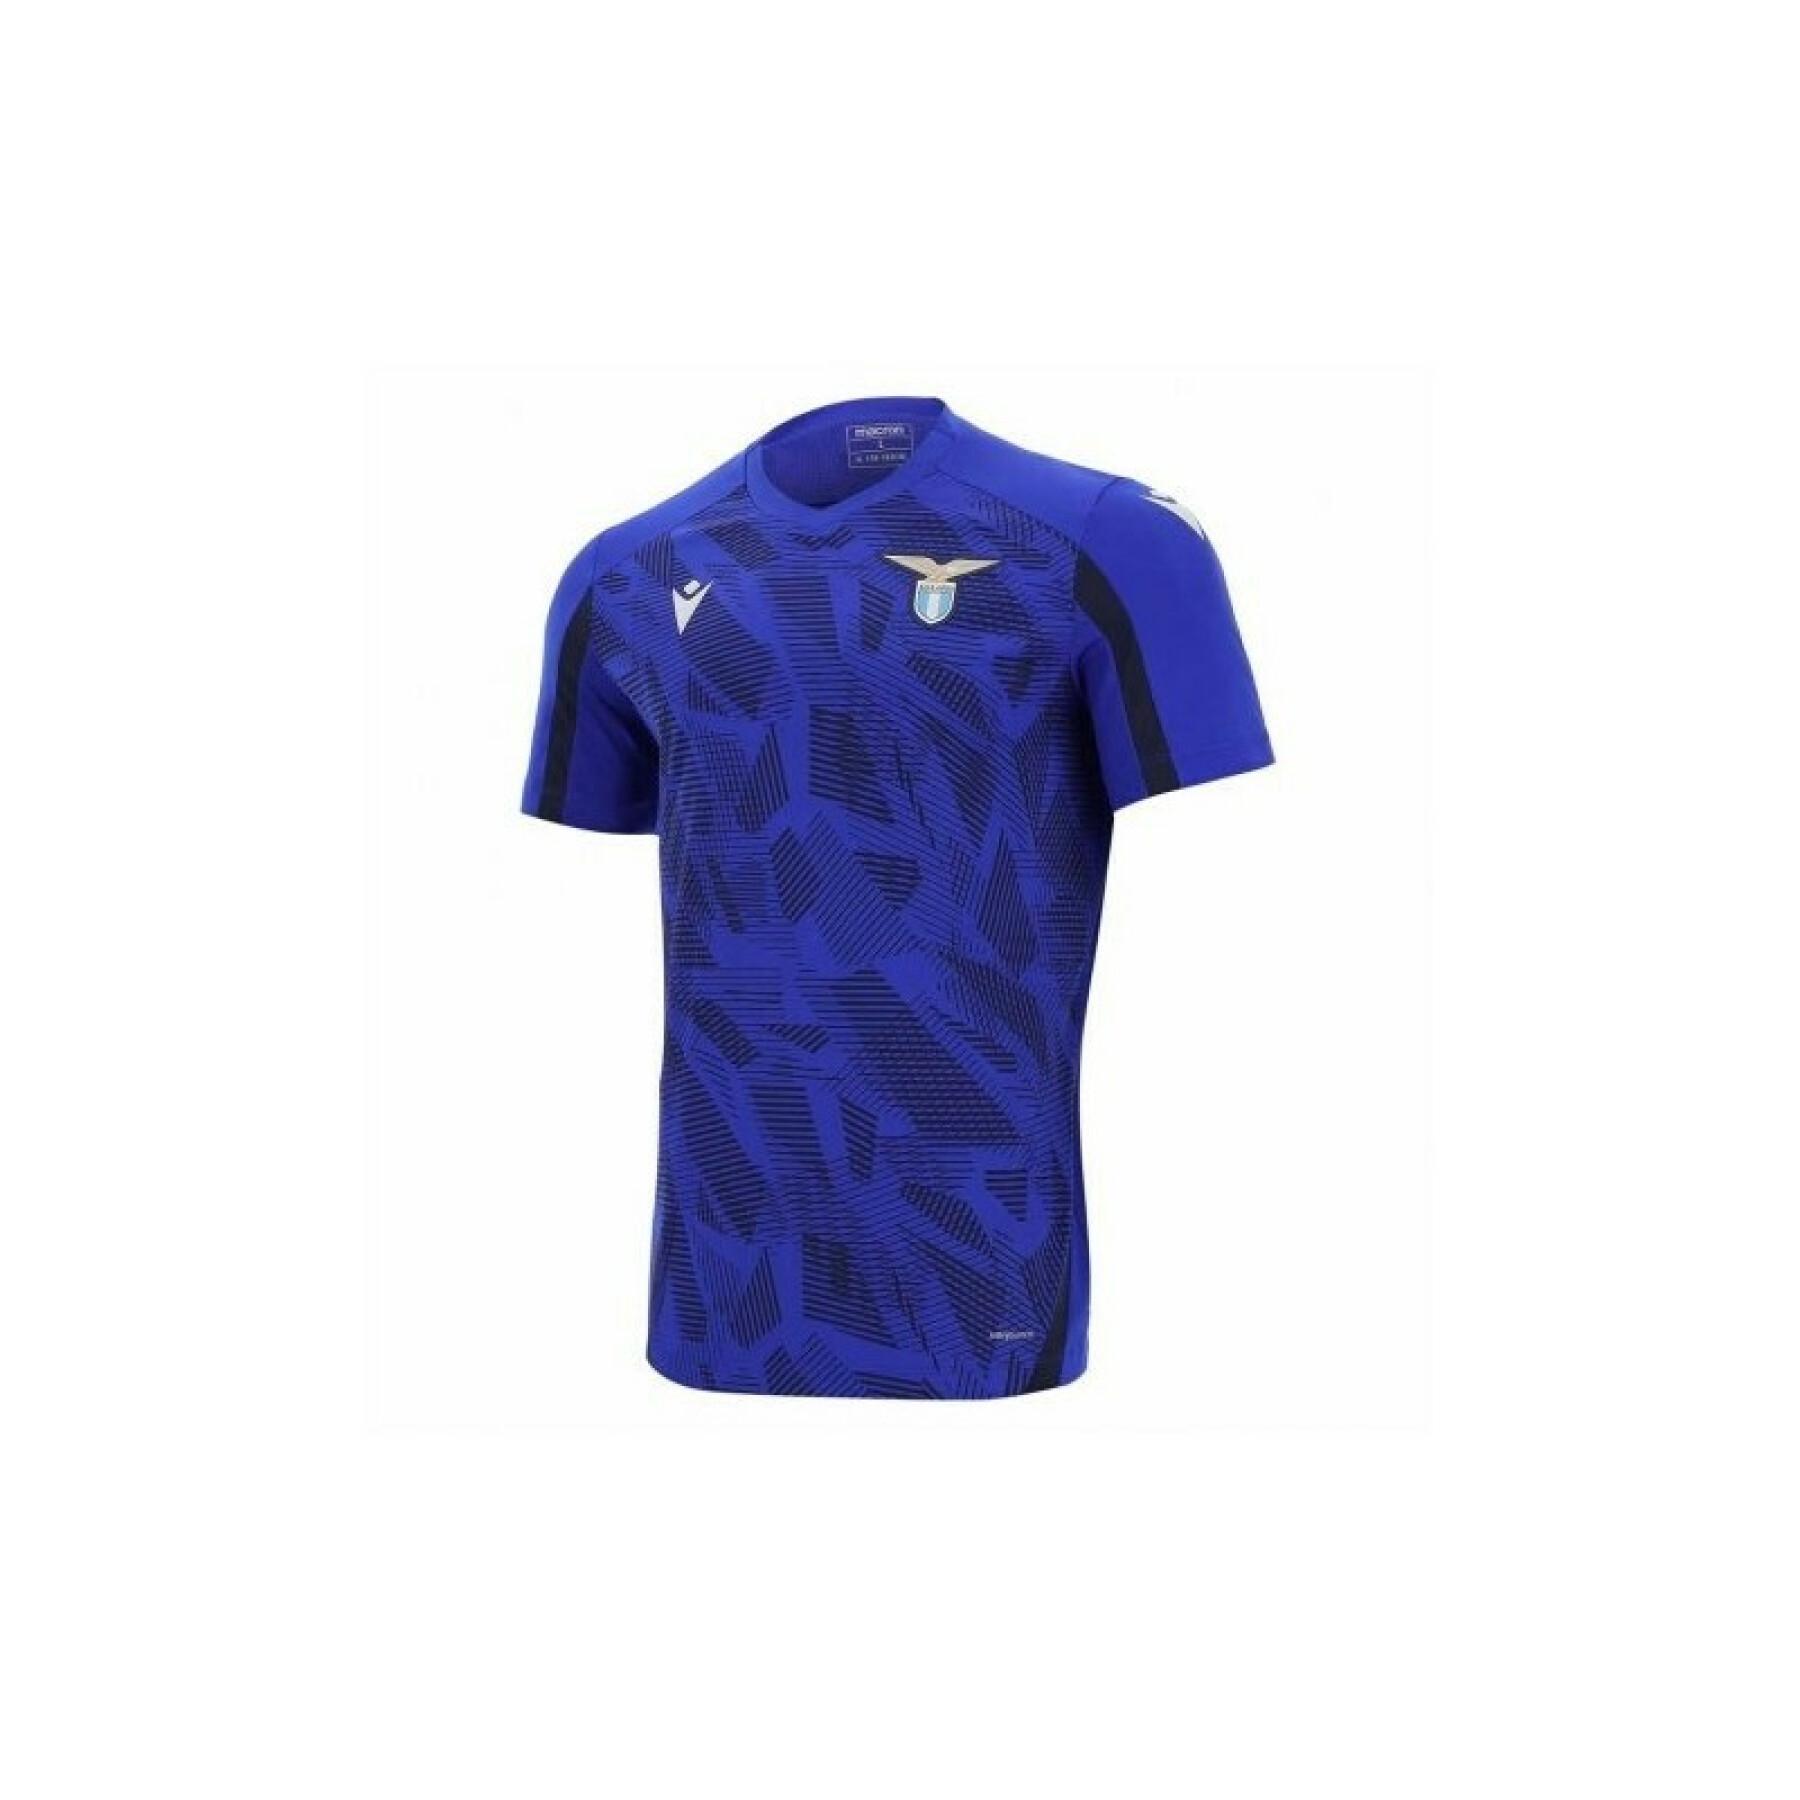 Summer preparation jersey Lazio Rome 2021/22